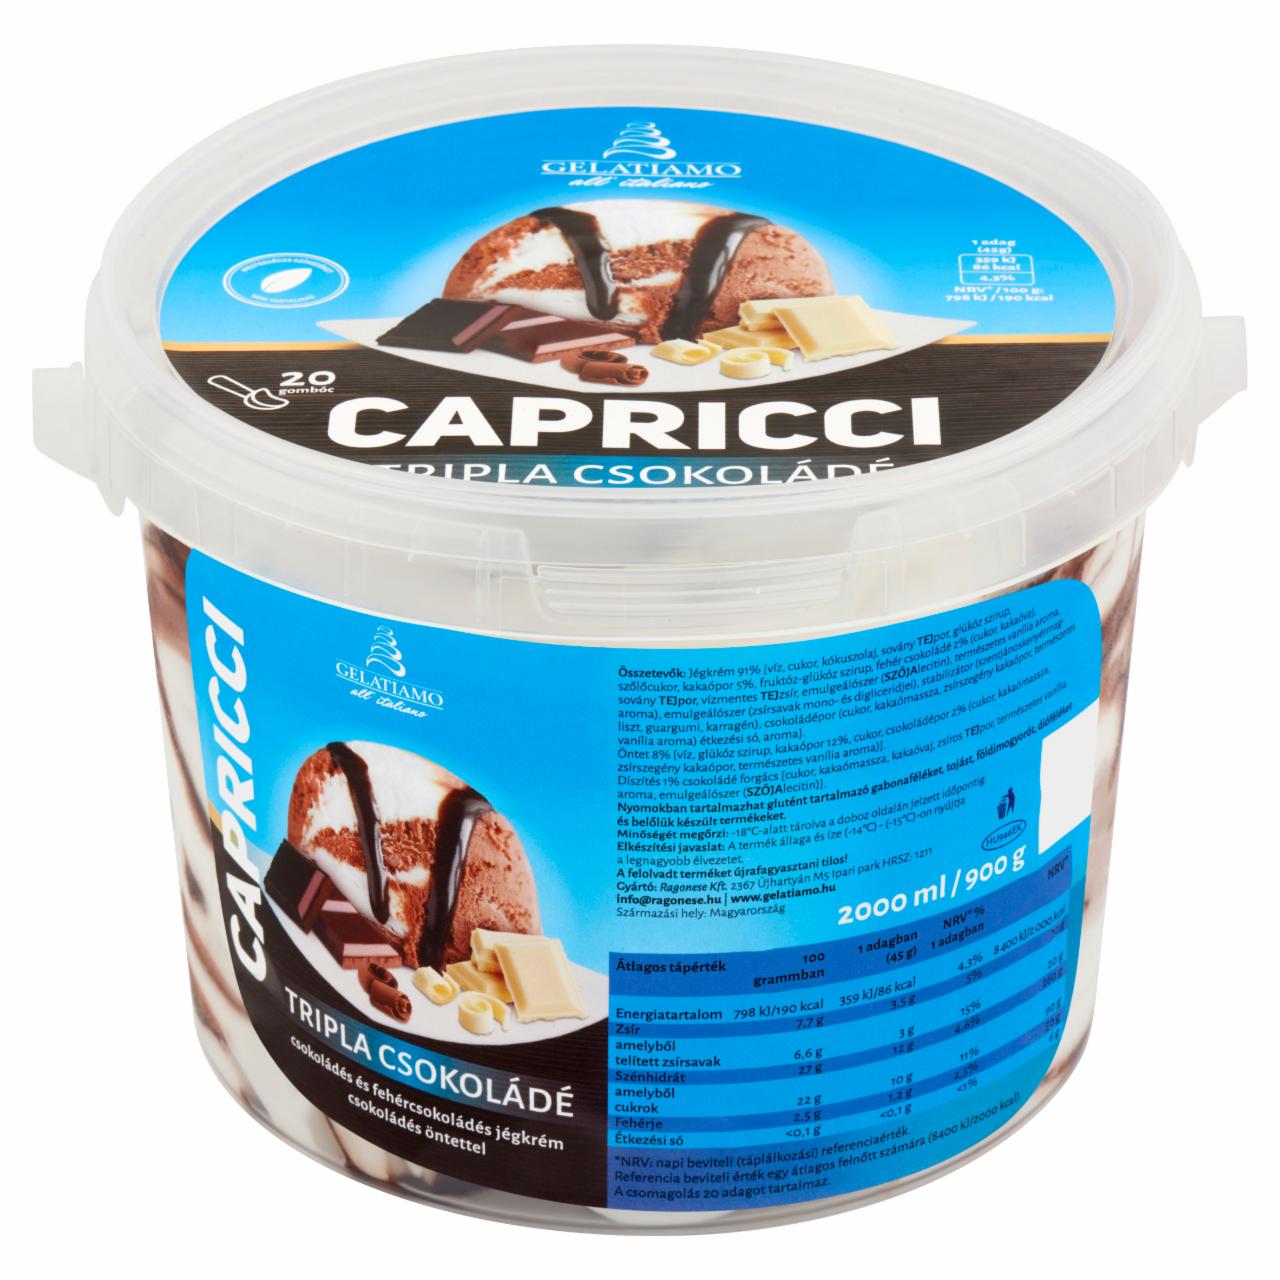 Képek - Gelatiamo Capricci Tripla Csokoládé csokoládés & fehércsokoládés jégkrém csokoládés öntettel 2000 ml